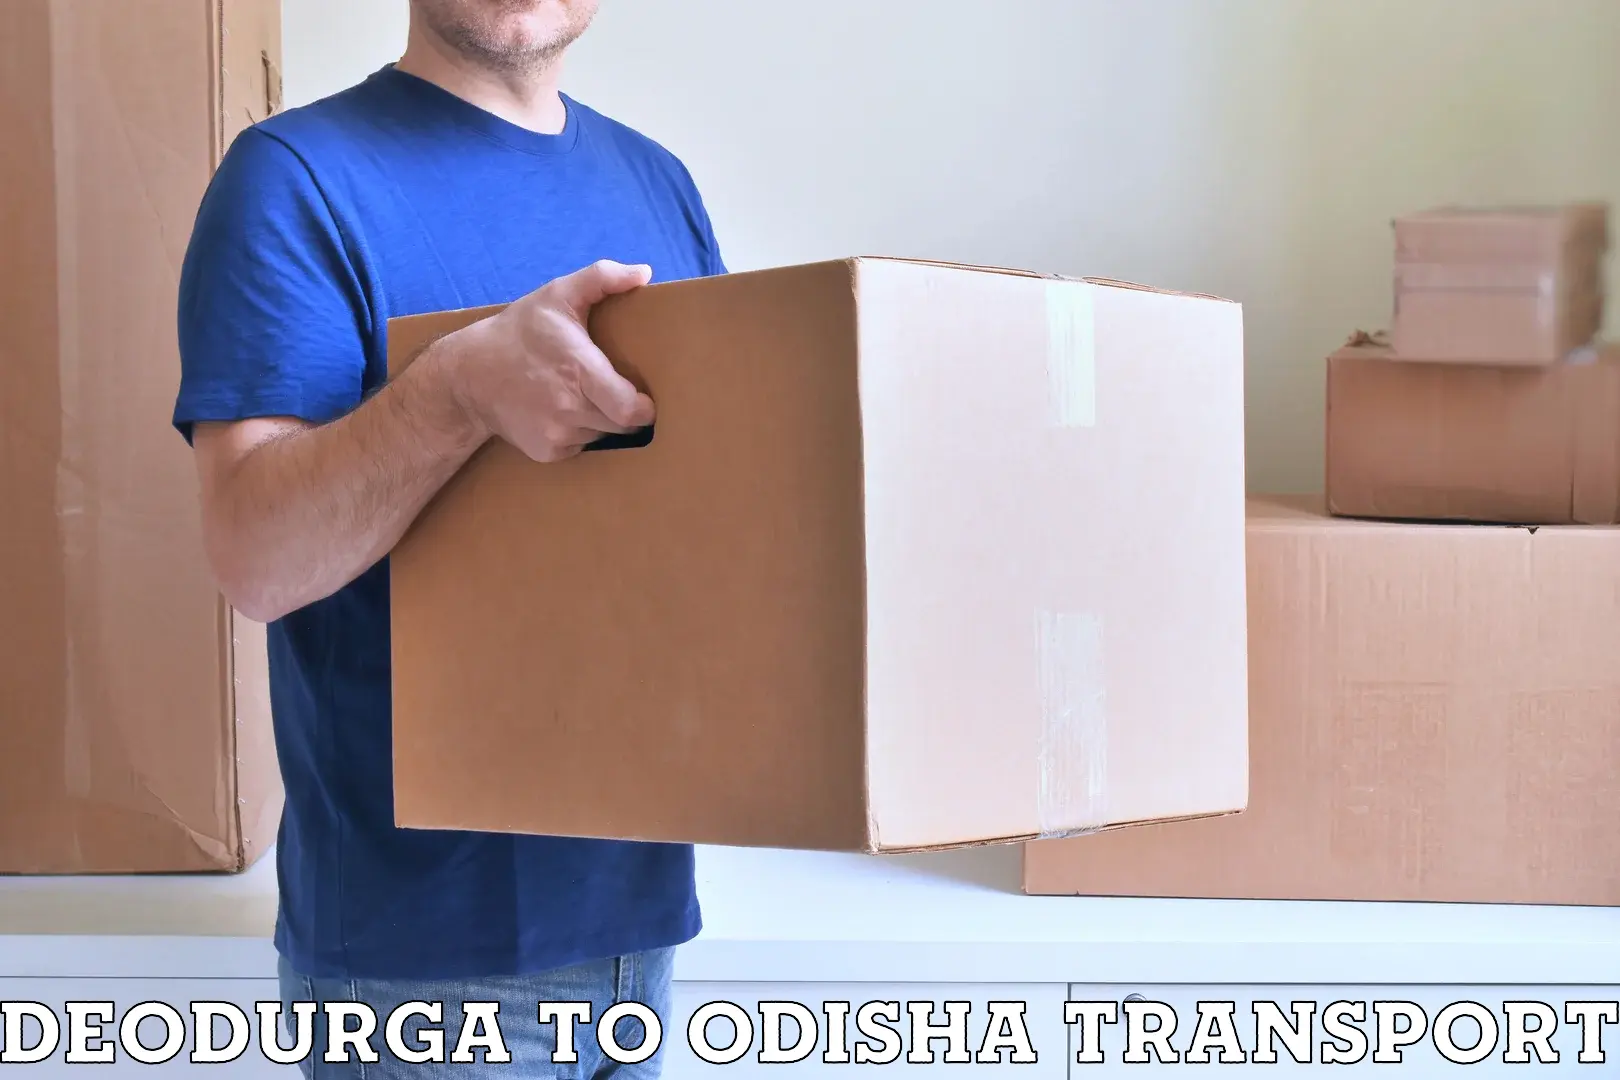 Air freight transport services Deodurga to Balliguda